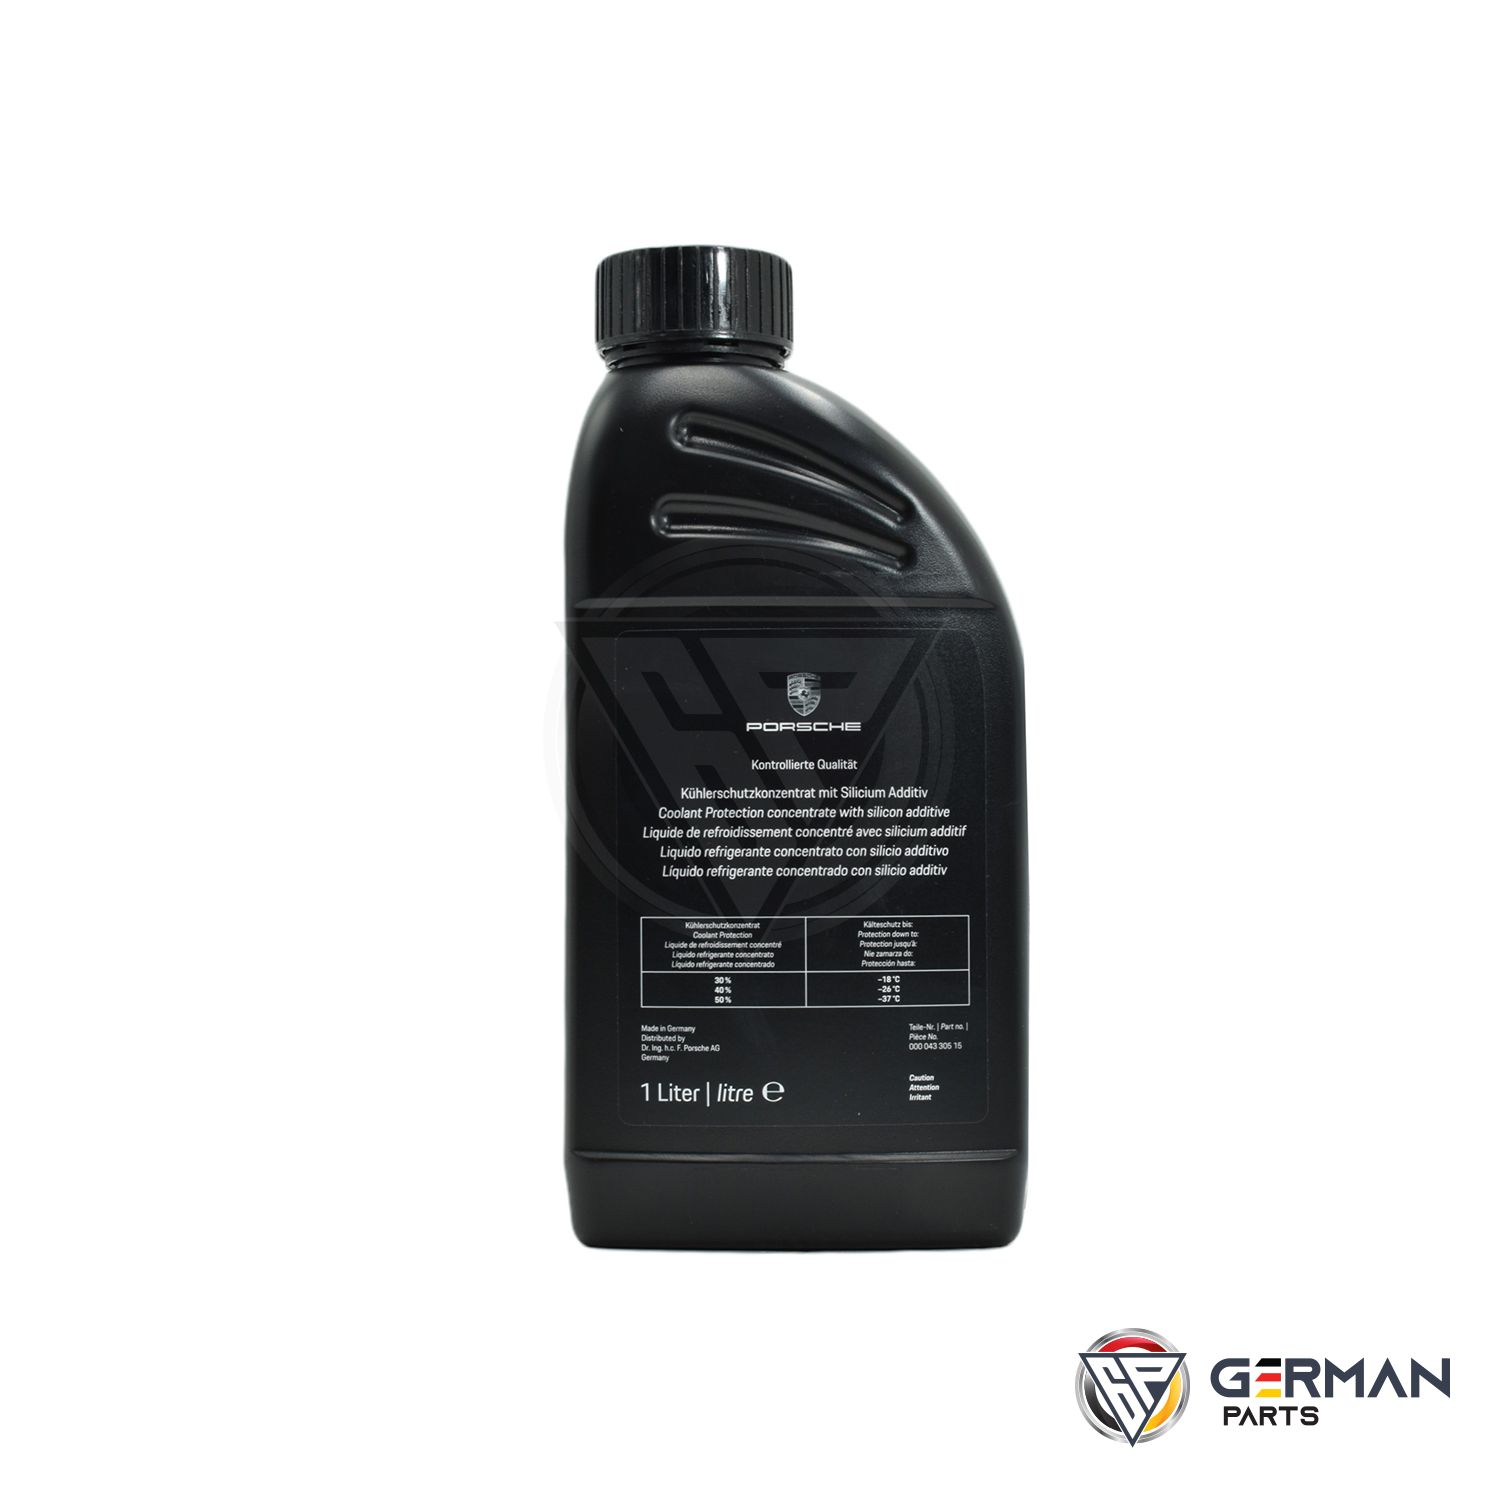 For Porsche Coolant/Antifreeze Genuine For Porsche 1 Liter Brand New